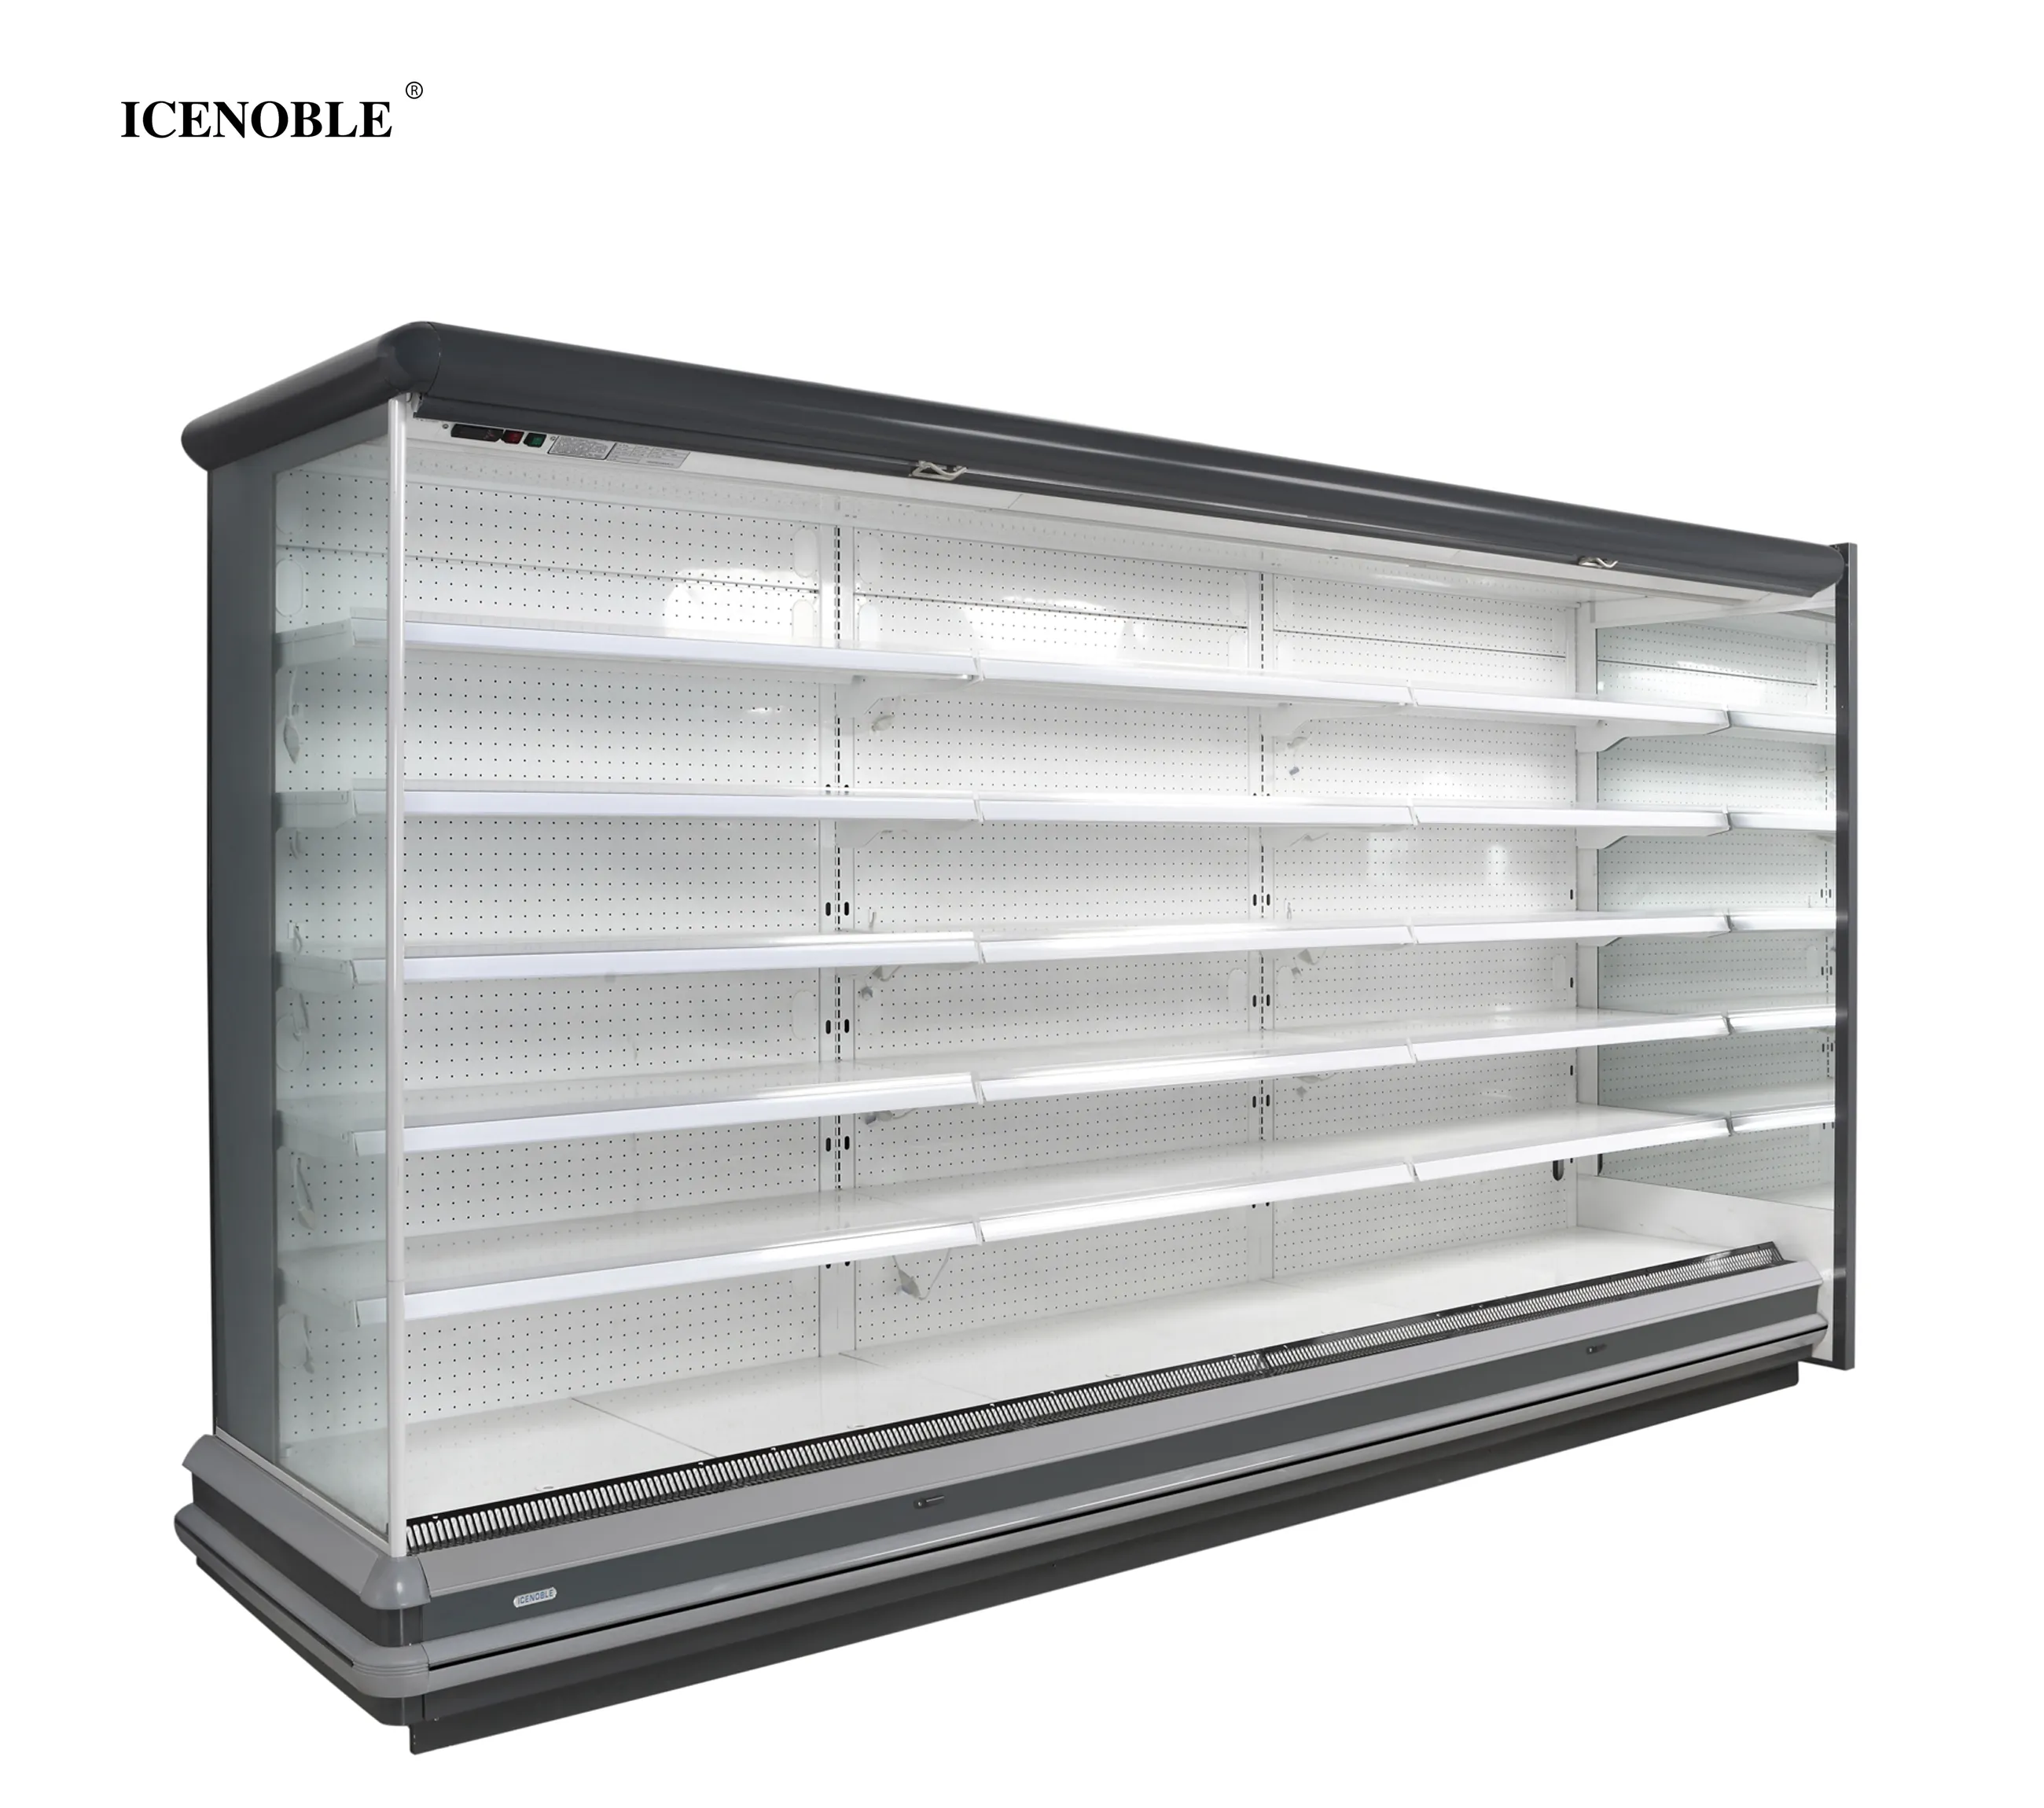 スーパーマーケットの冷凍装置マルチデッキオープンクーラー/エアカーテン/ドリンク用アップライトオープンチラー